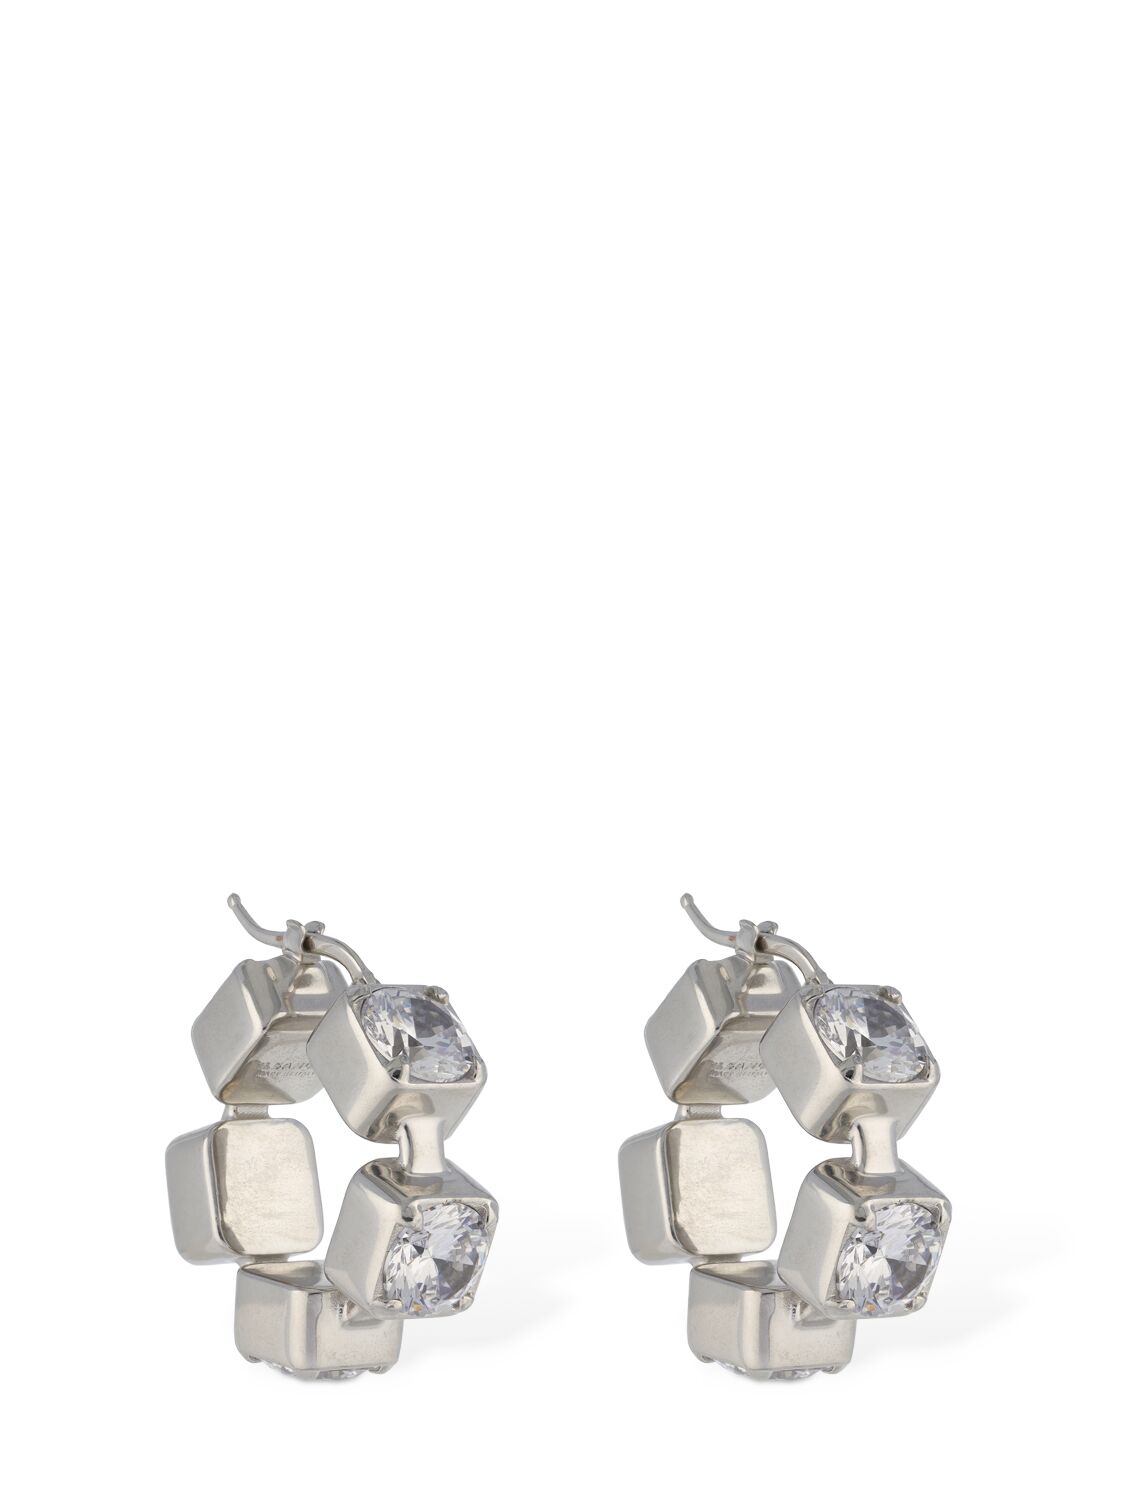 Jil Sander Bw1 5 Crystal Hoop Earrings In Silver